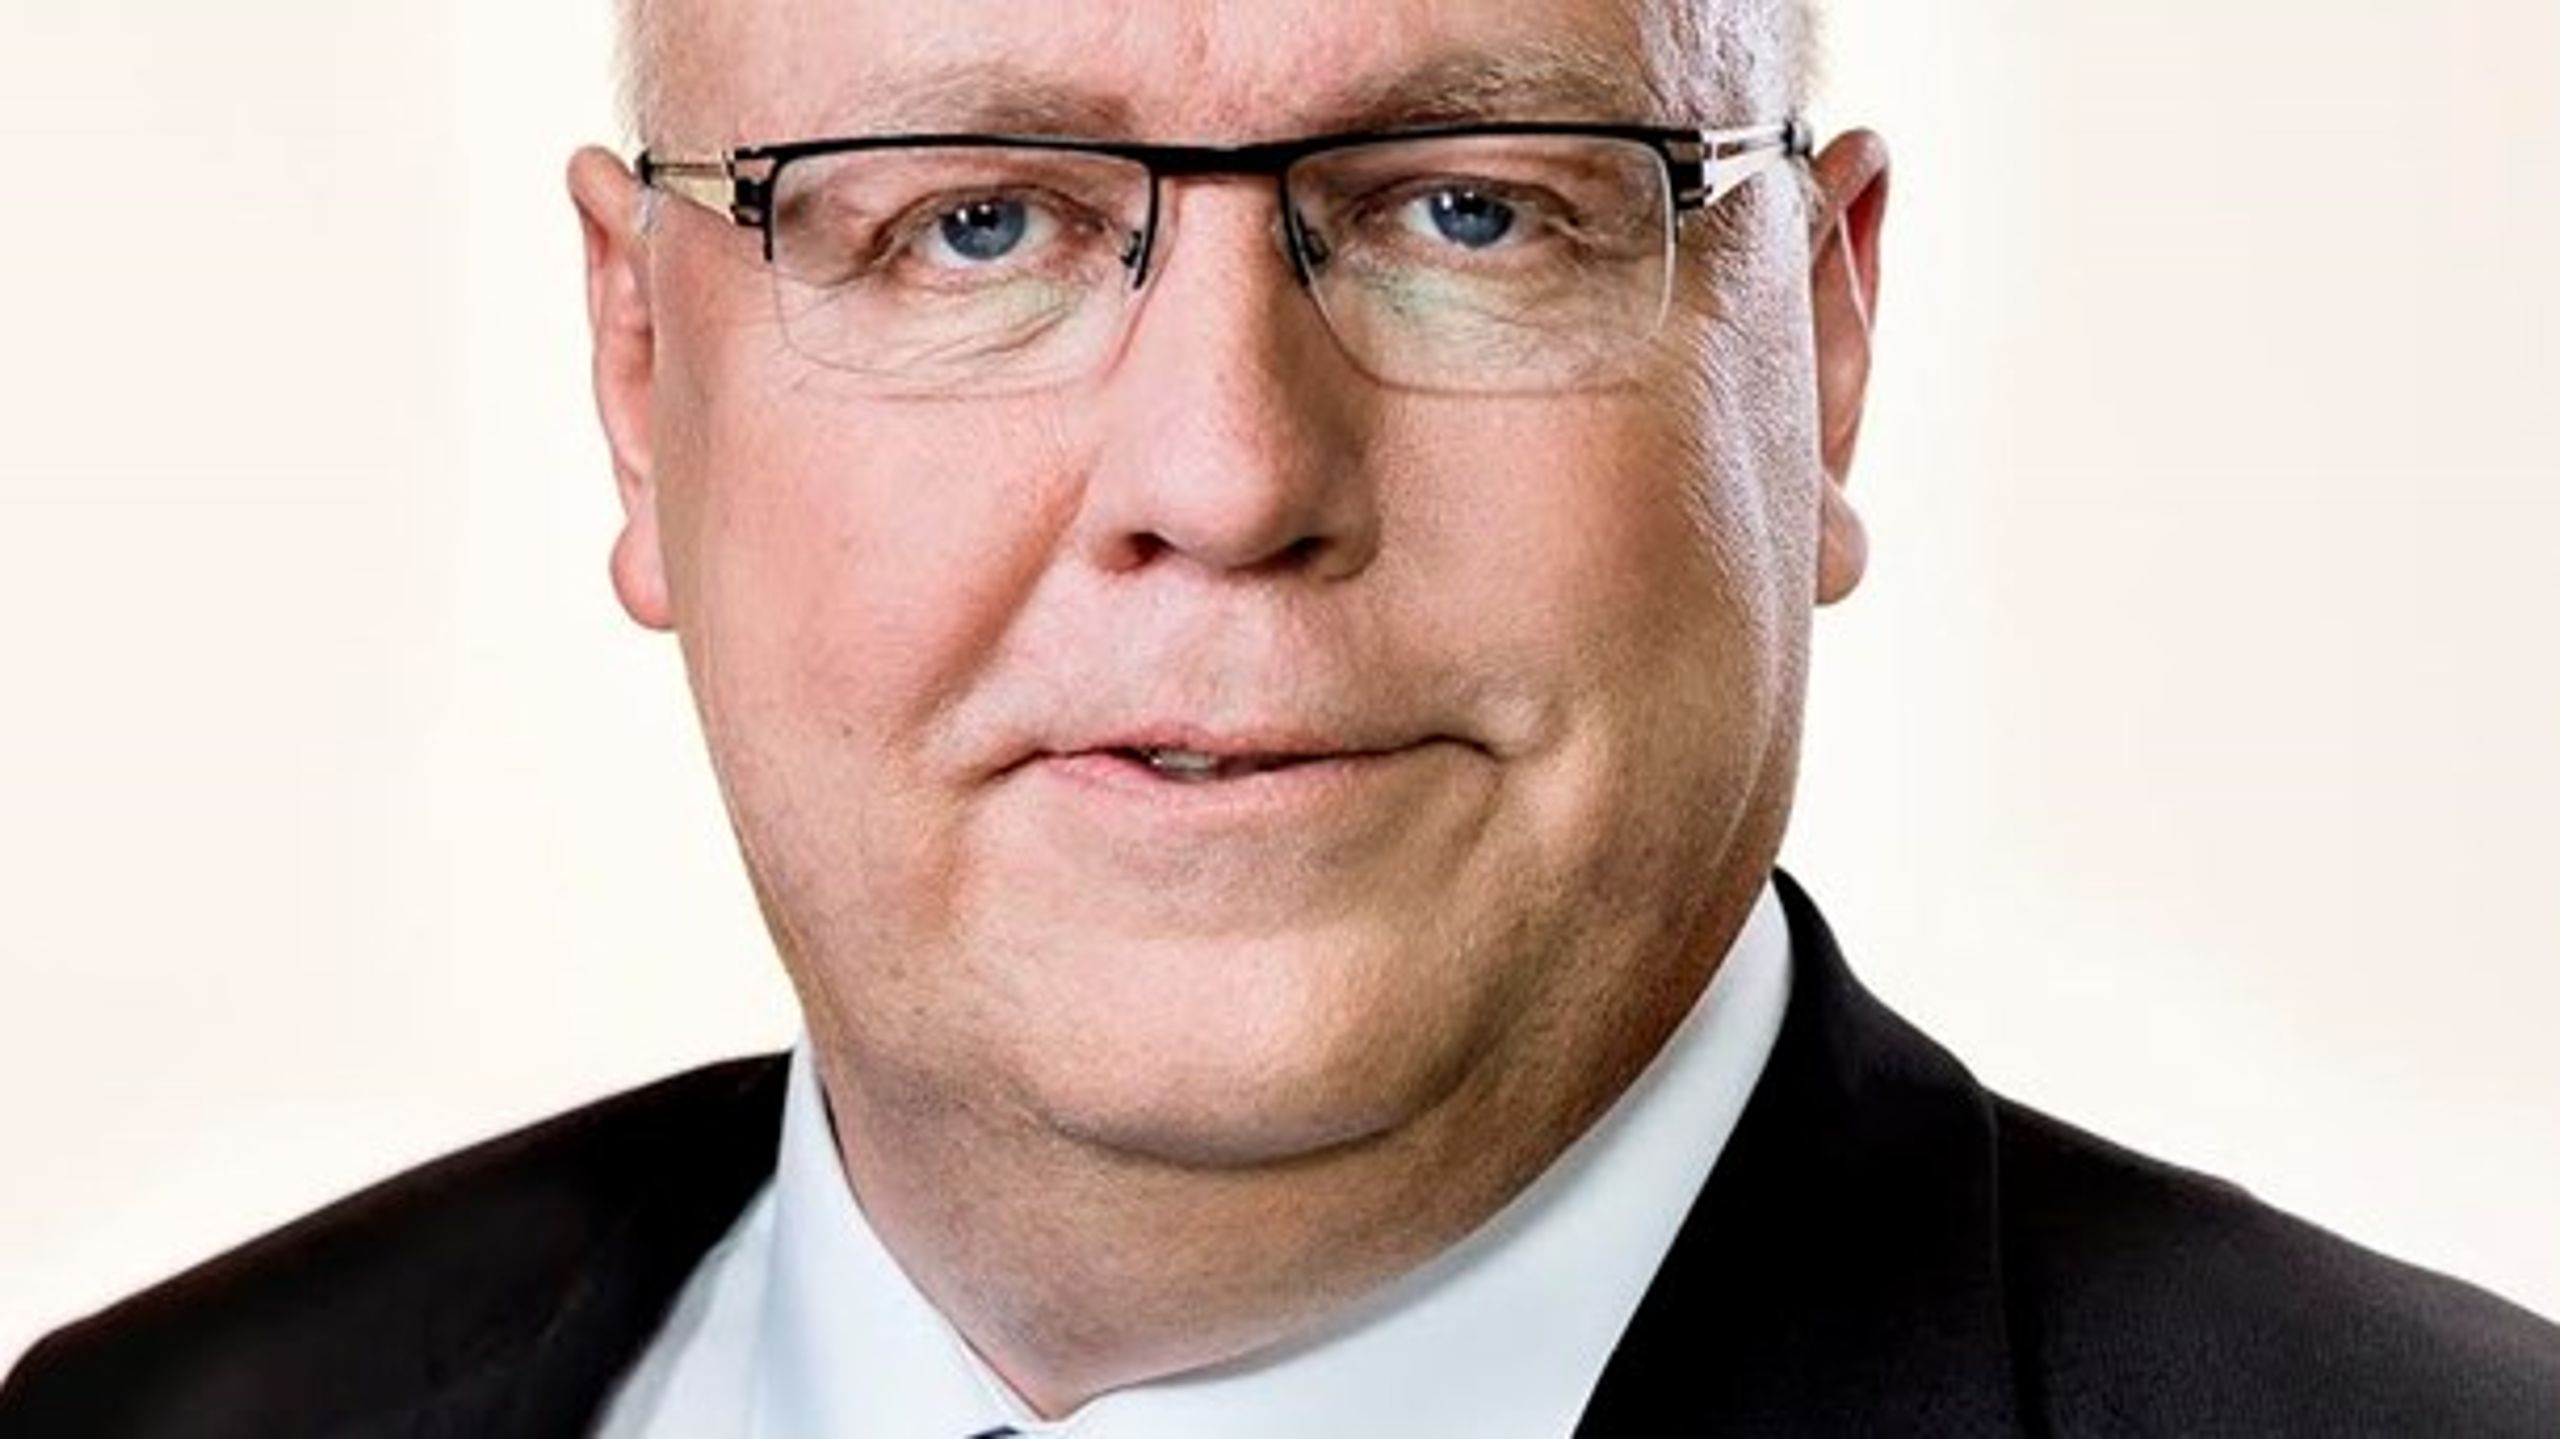 Venstres transportordfører, Kristian Pihl Lorentzen, langer ud efter socialdemokraterne. Regnestykket bag togfonden holder ikke. Punktum, lyder det.